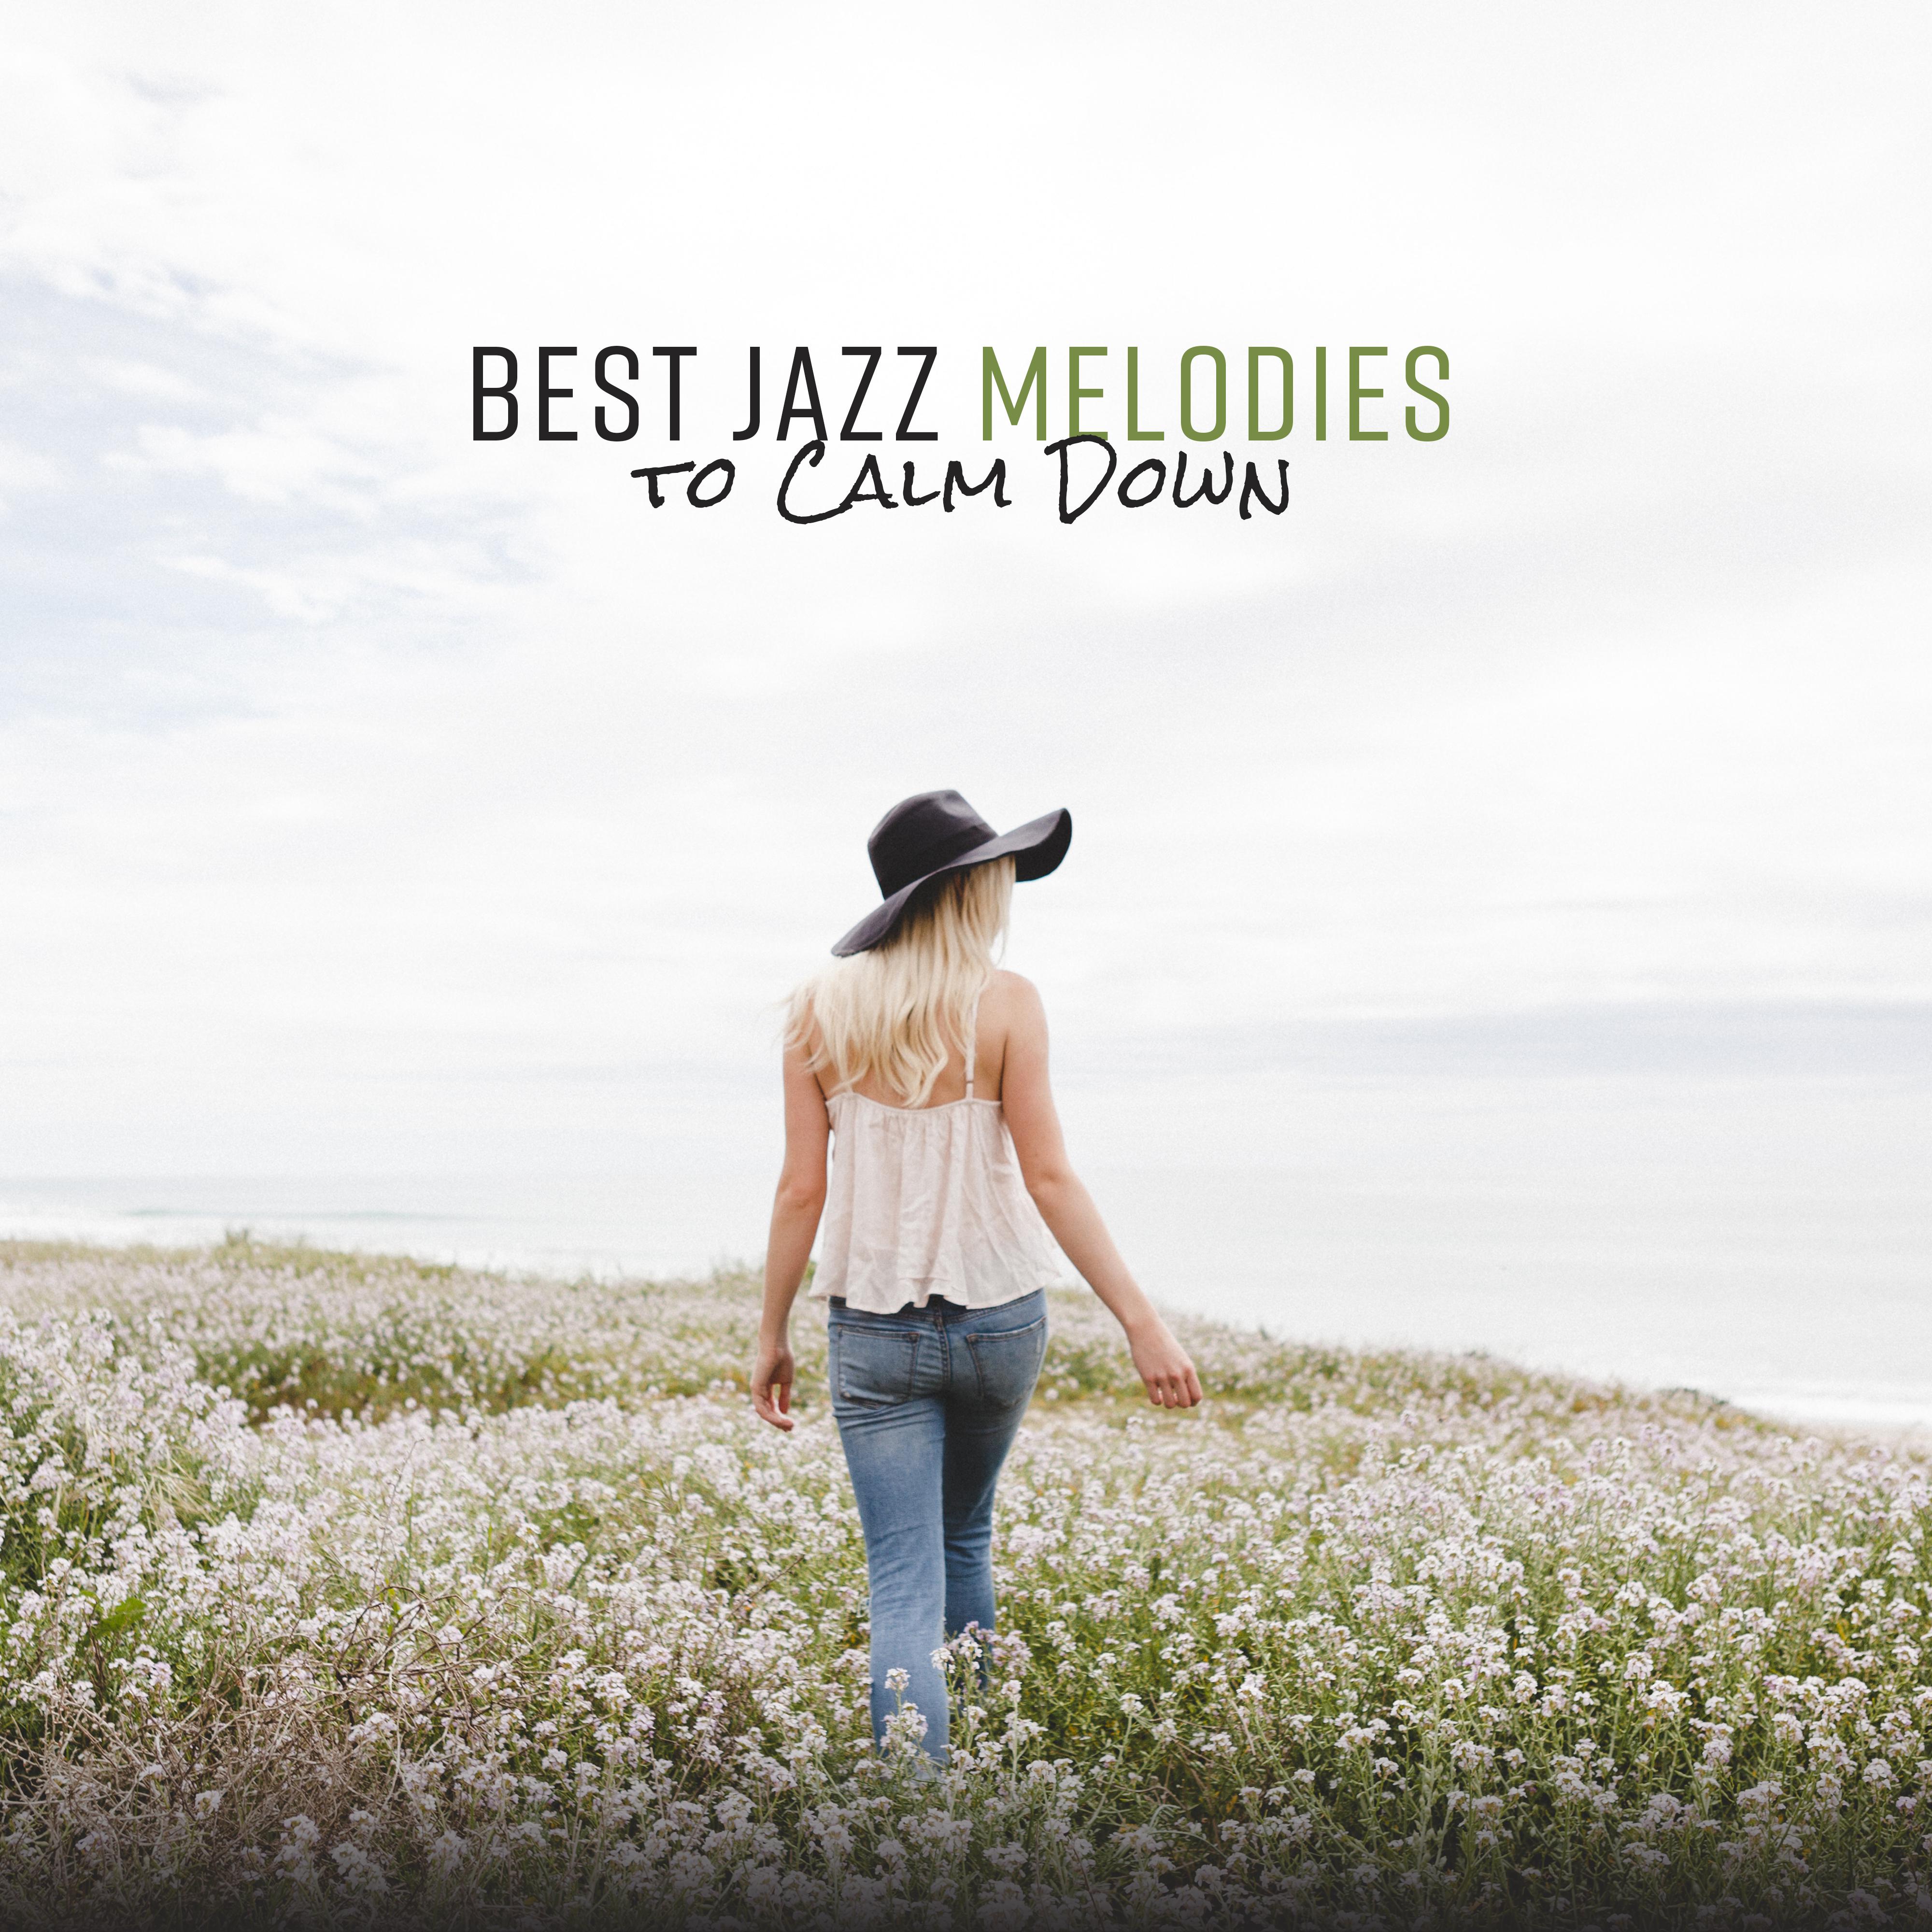 Best Jazz Melodies to Calm Down